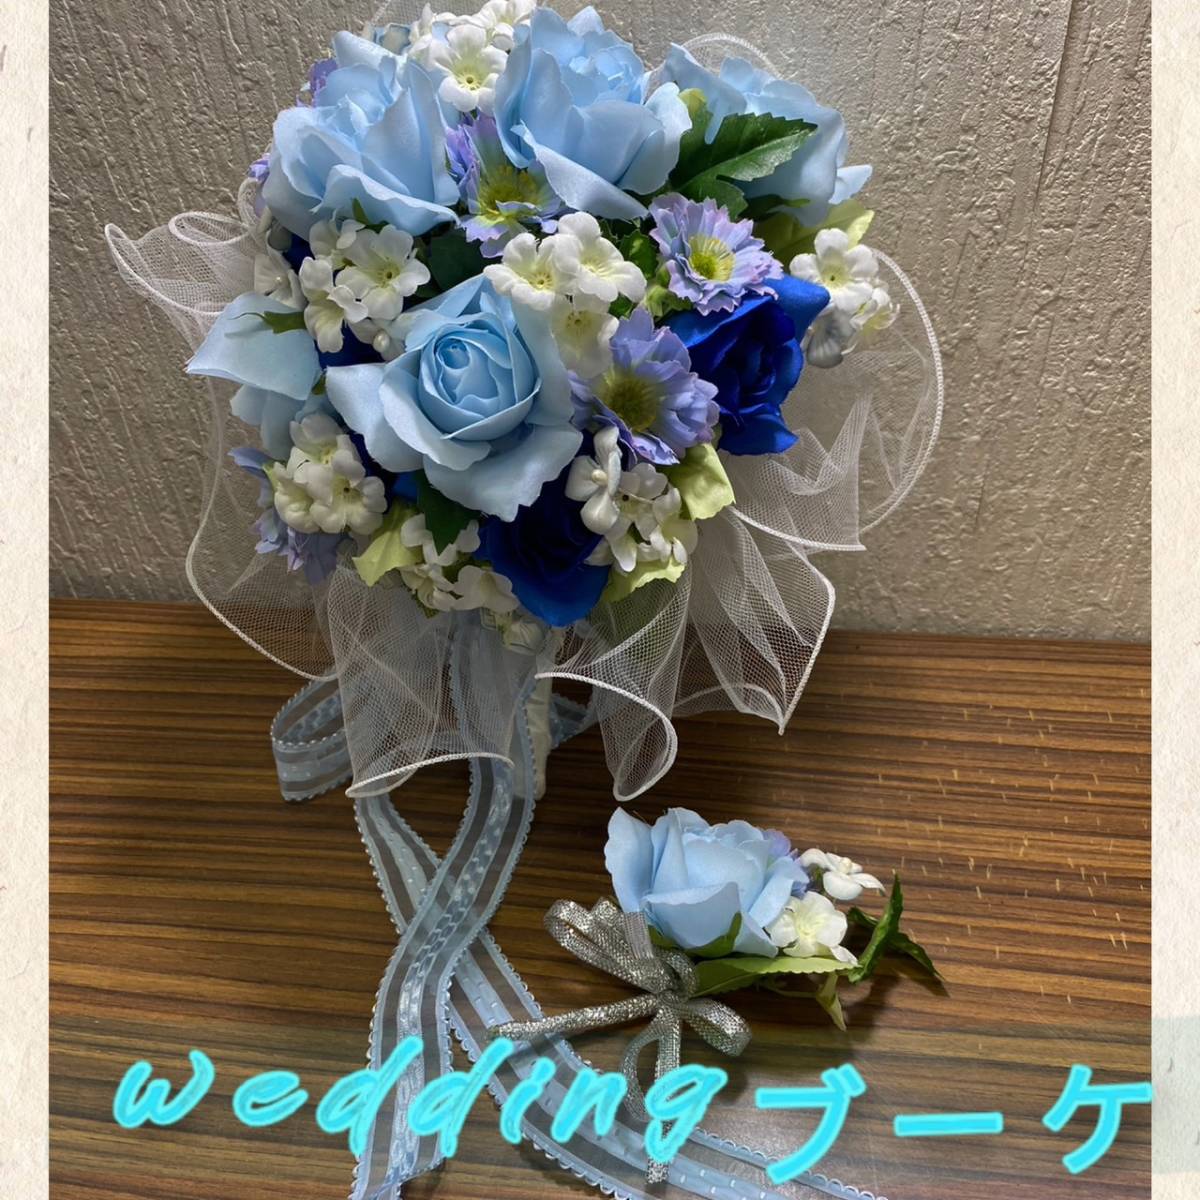 u Эдди ng букет * свадьба невеста цветок . бледно-голубой роза букет цветок 